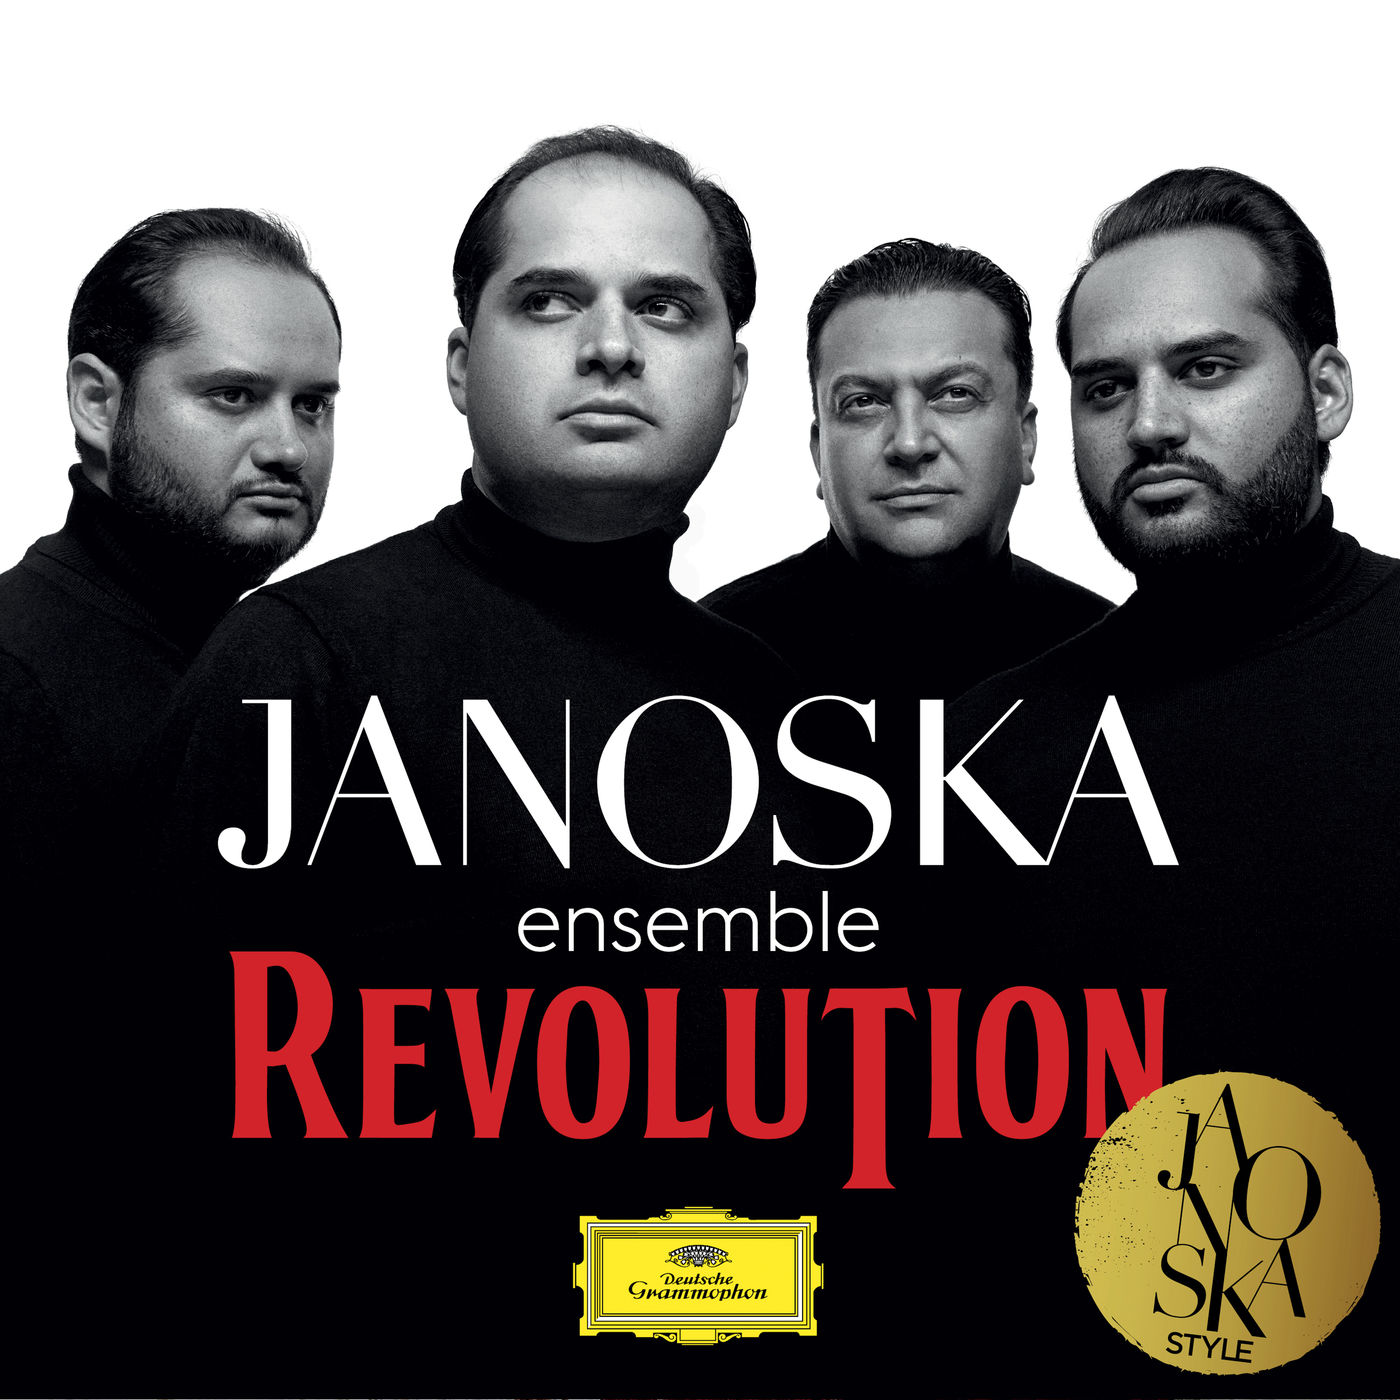 Janoska Ensemble - Revolution (2019) [FLAC 24bit/96kHz]